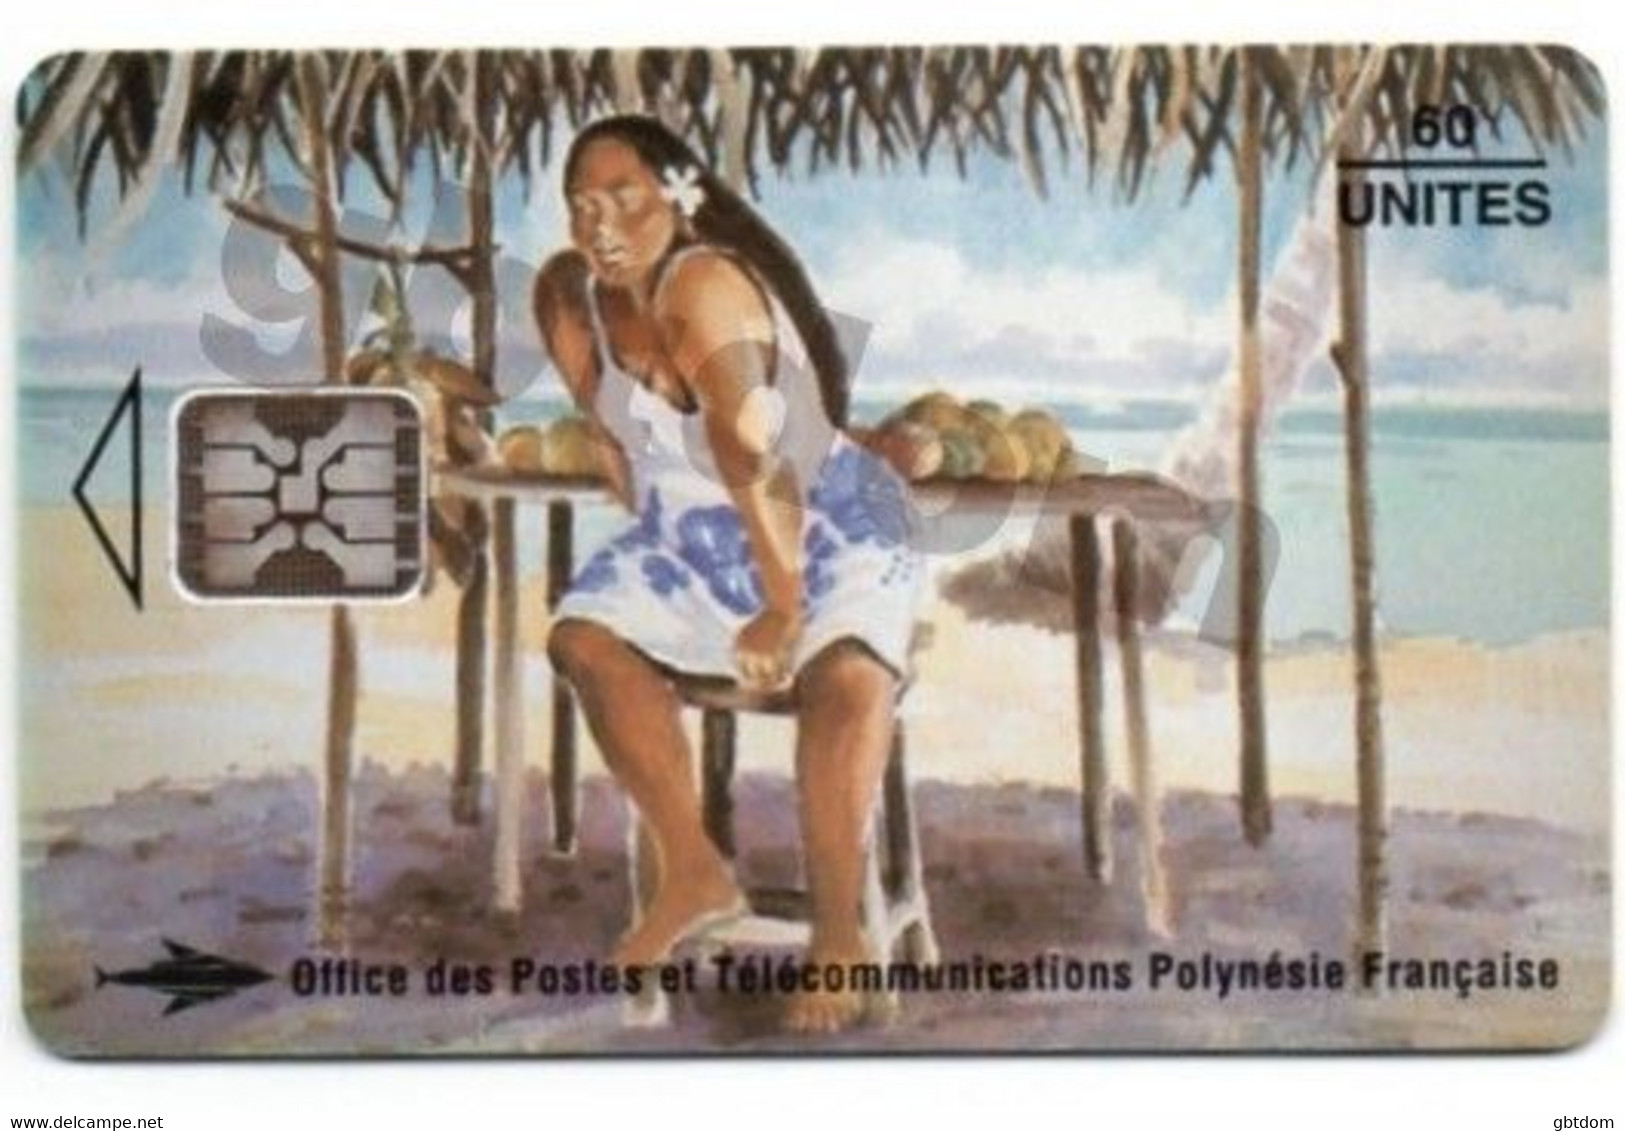 Magnifique Carte Téléphonique De TAHITI Polynésie Française - Vendeuse De Mangues - Erhard Lux - Andere - Oceanië